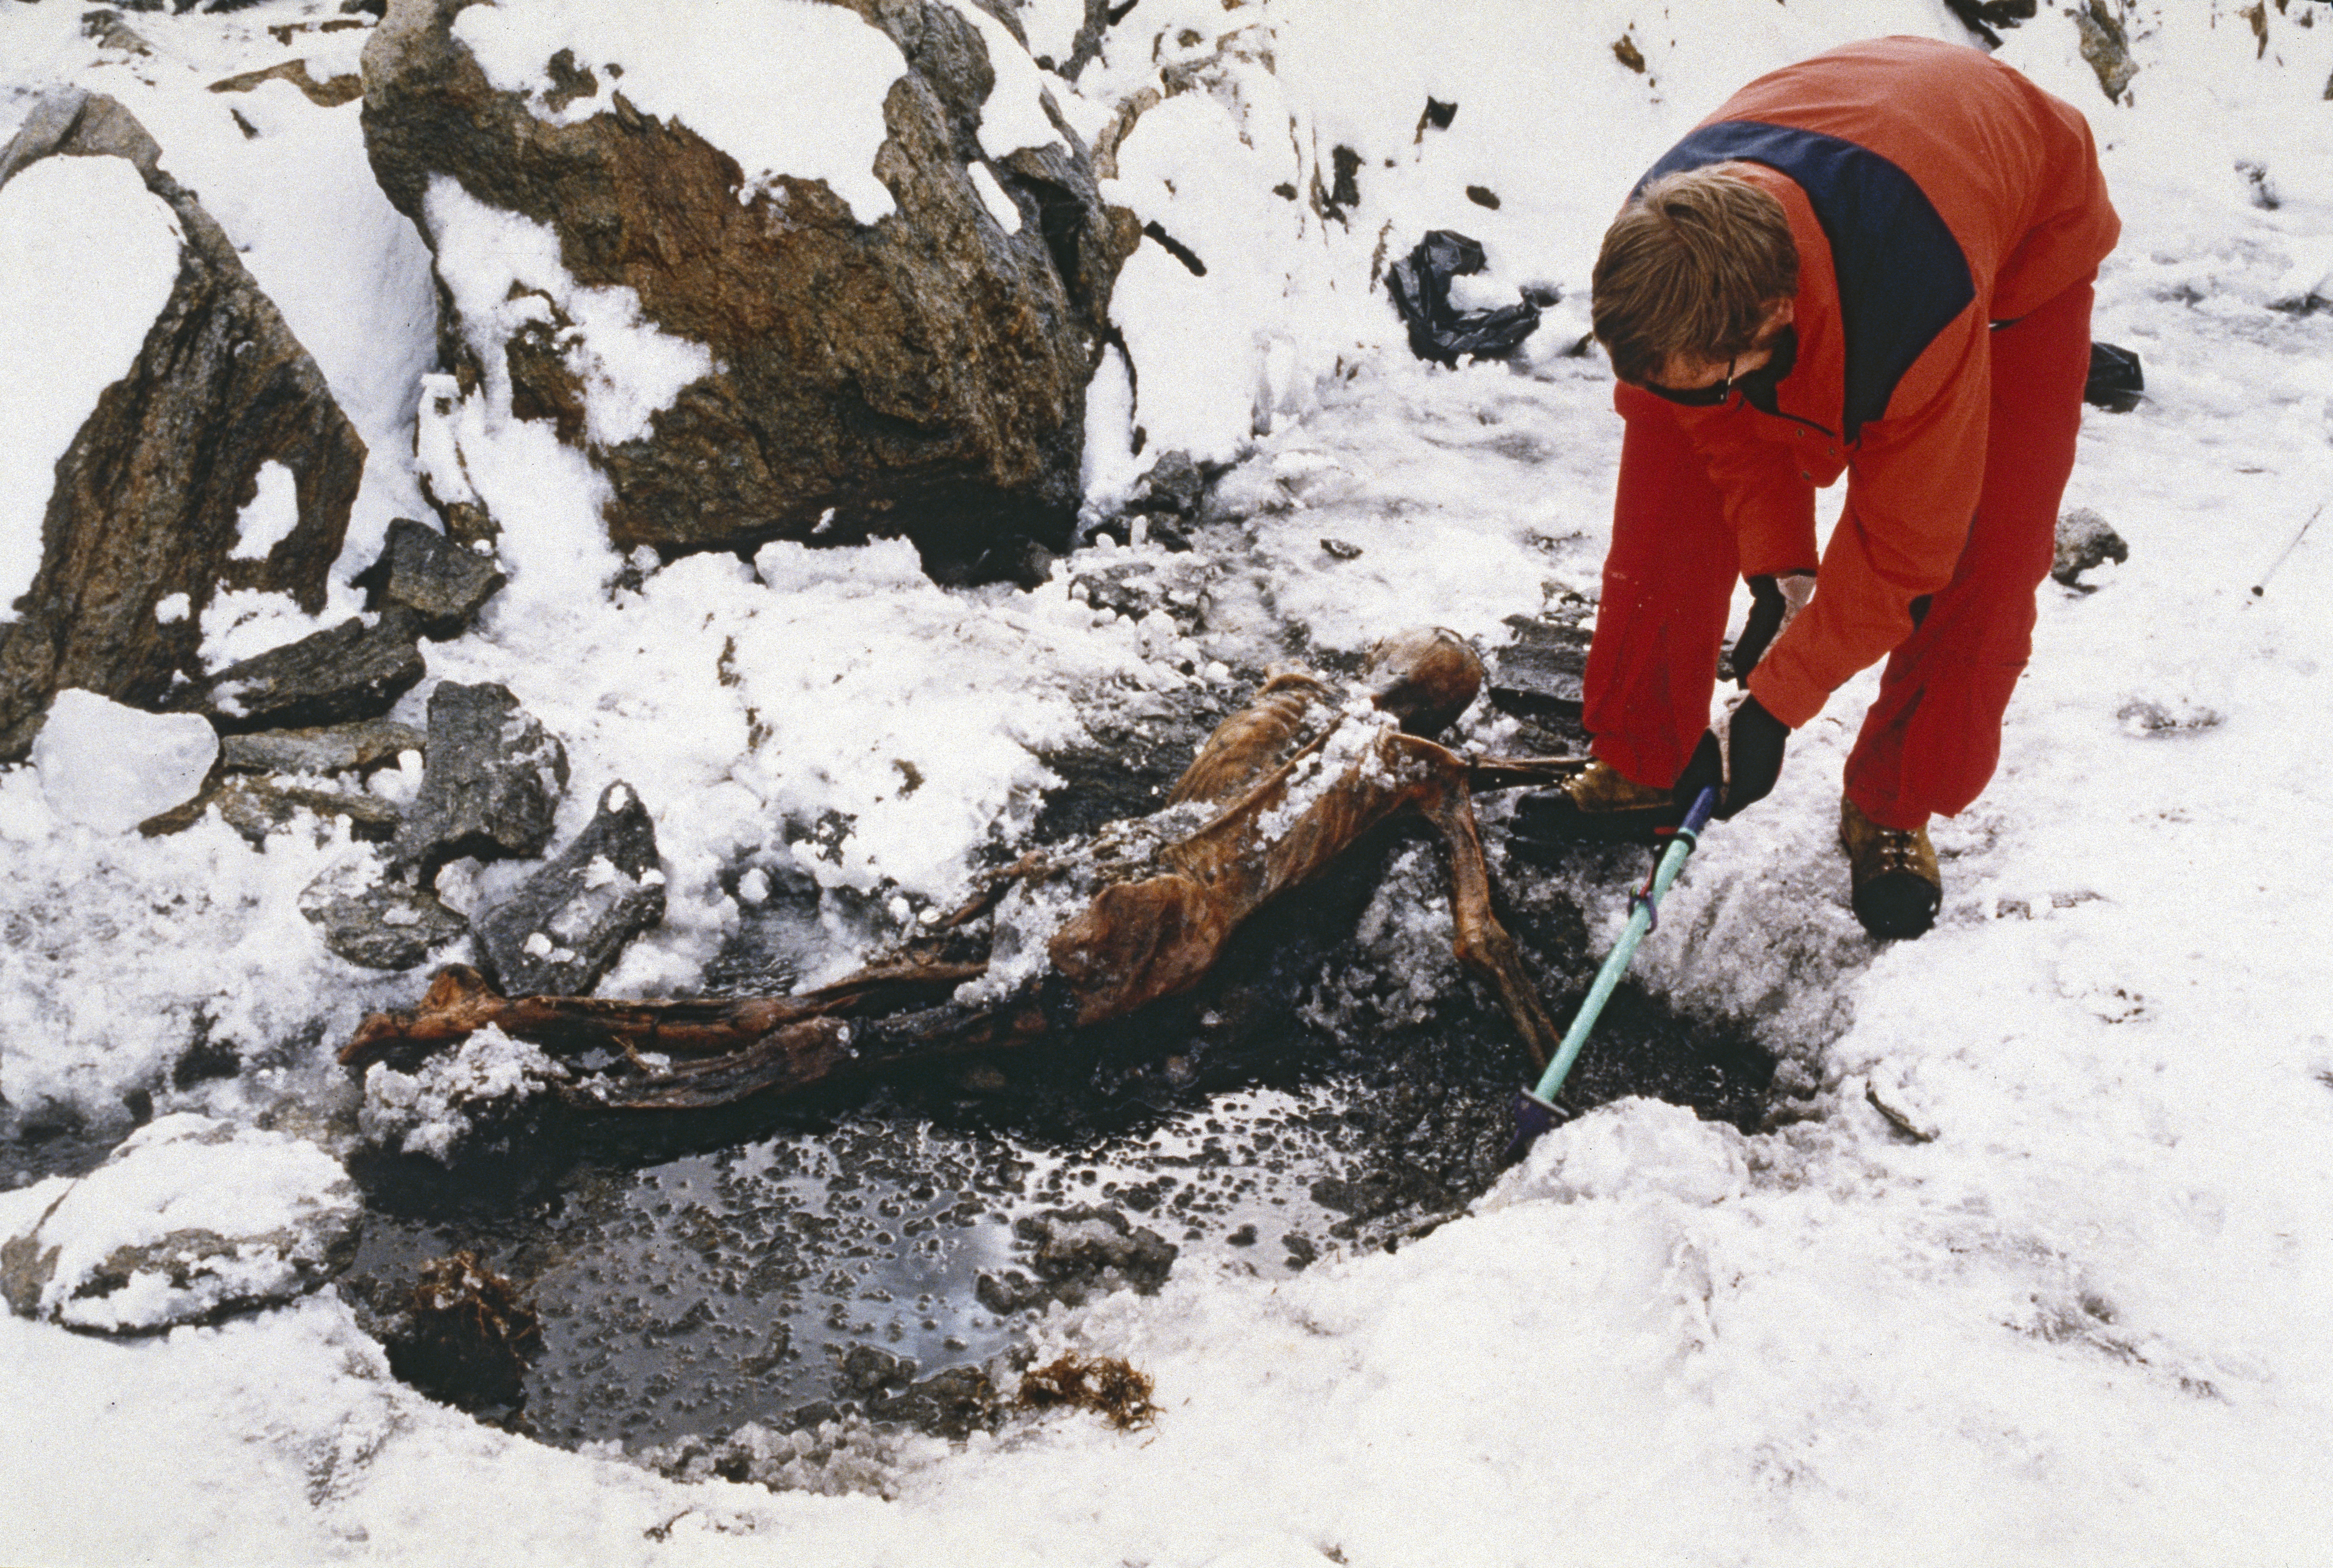 Para recuperar el cuerpo de Ötzil de su prisión de hielo, los científicos debieron hacer un paciente trabajo para no romperlo (Leopold Nekula/Sygma via Getty Images)